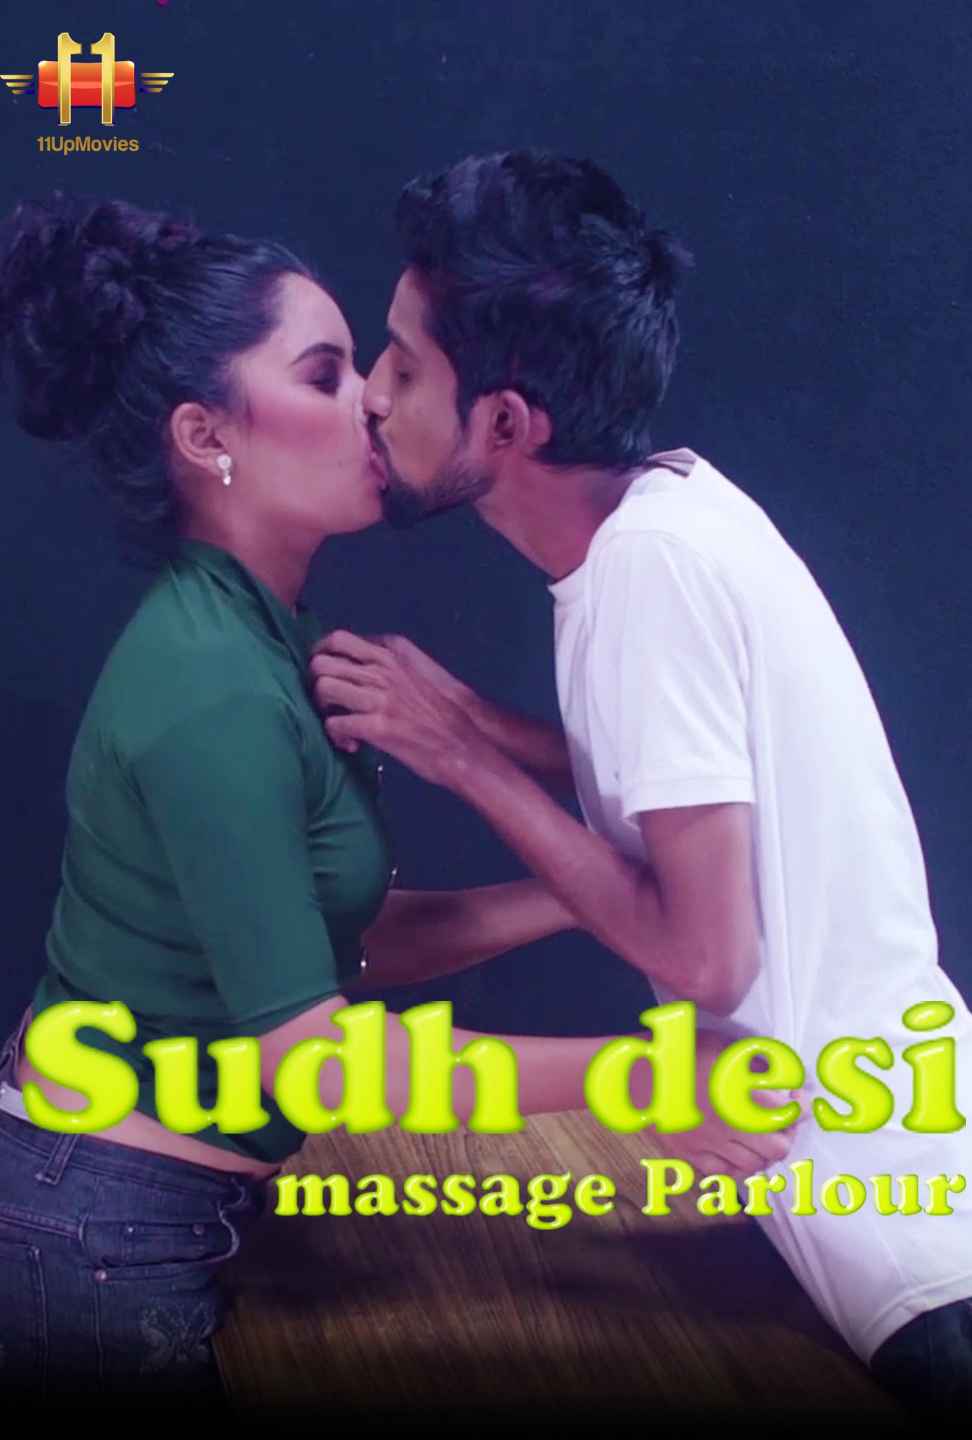 Suddh Desi Massage Parlour (2020) | 11UpMovies Exclusive Series | Season 02 Episodes 04 | 720p WEB-DL | Download | Watch Online